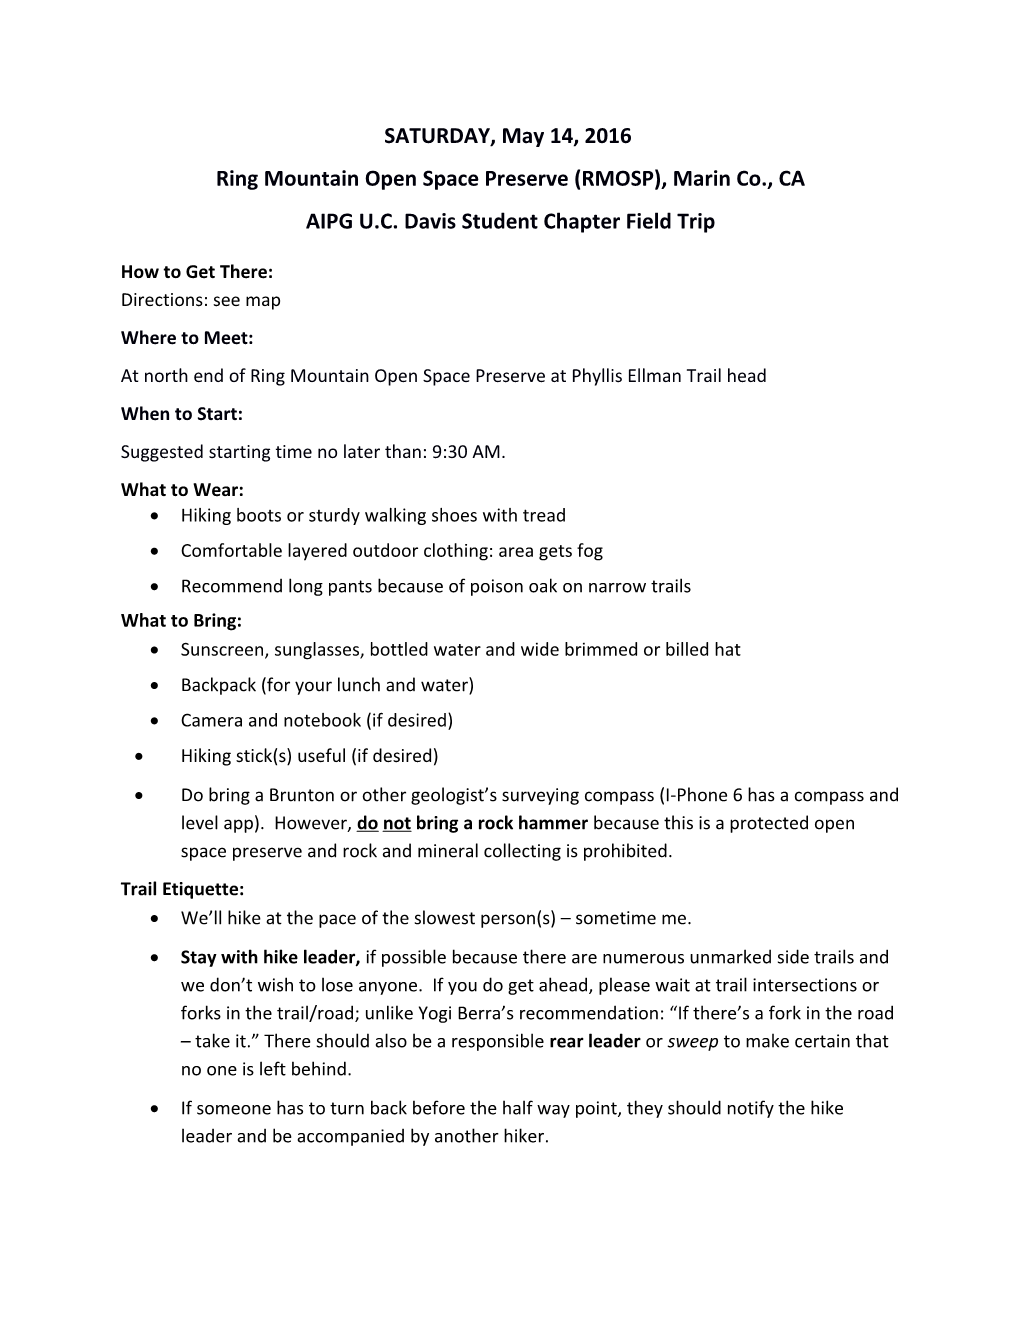 Ring Mountain Open Space Preserve (RMOSP), Marin Co., CA